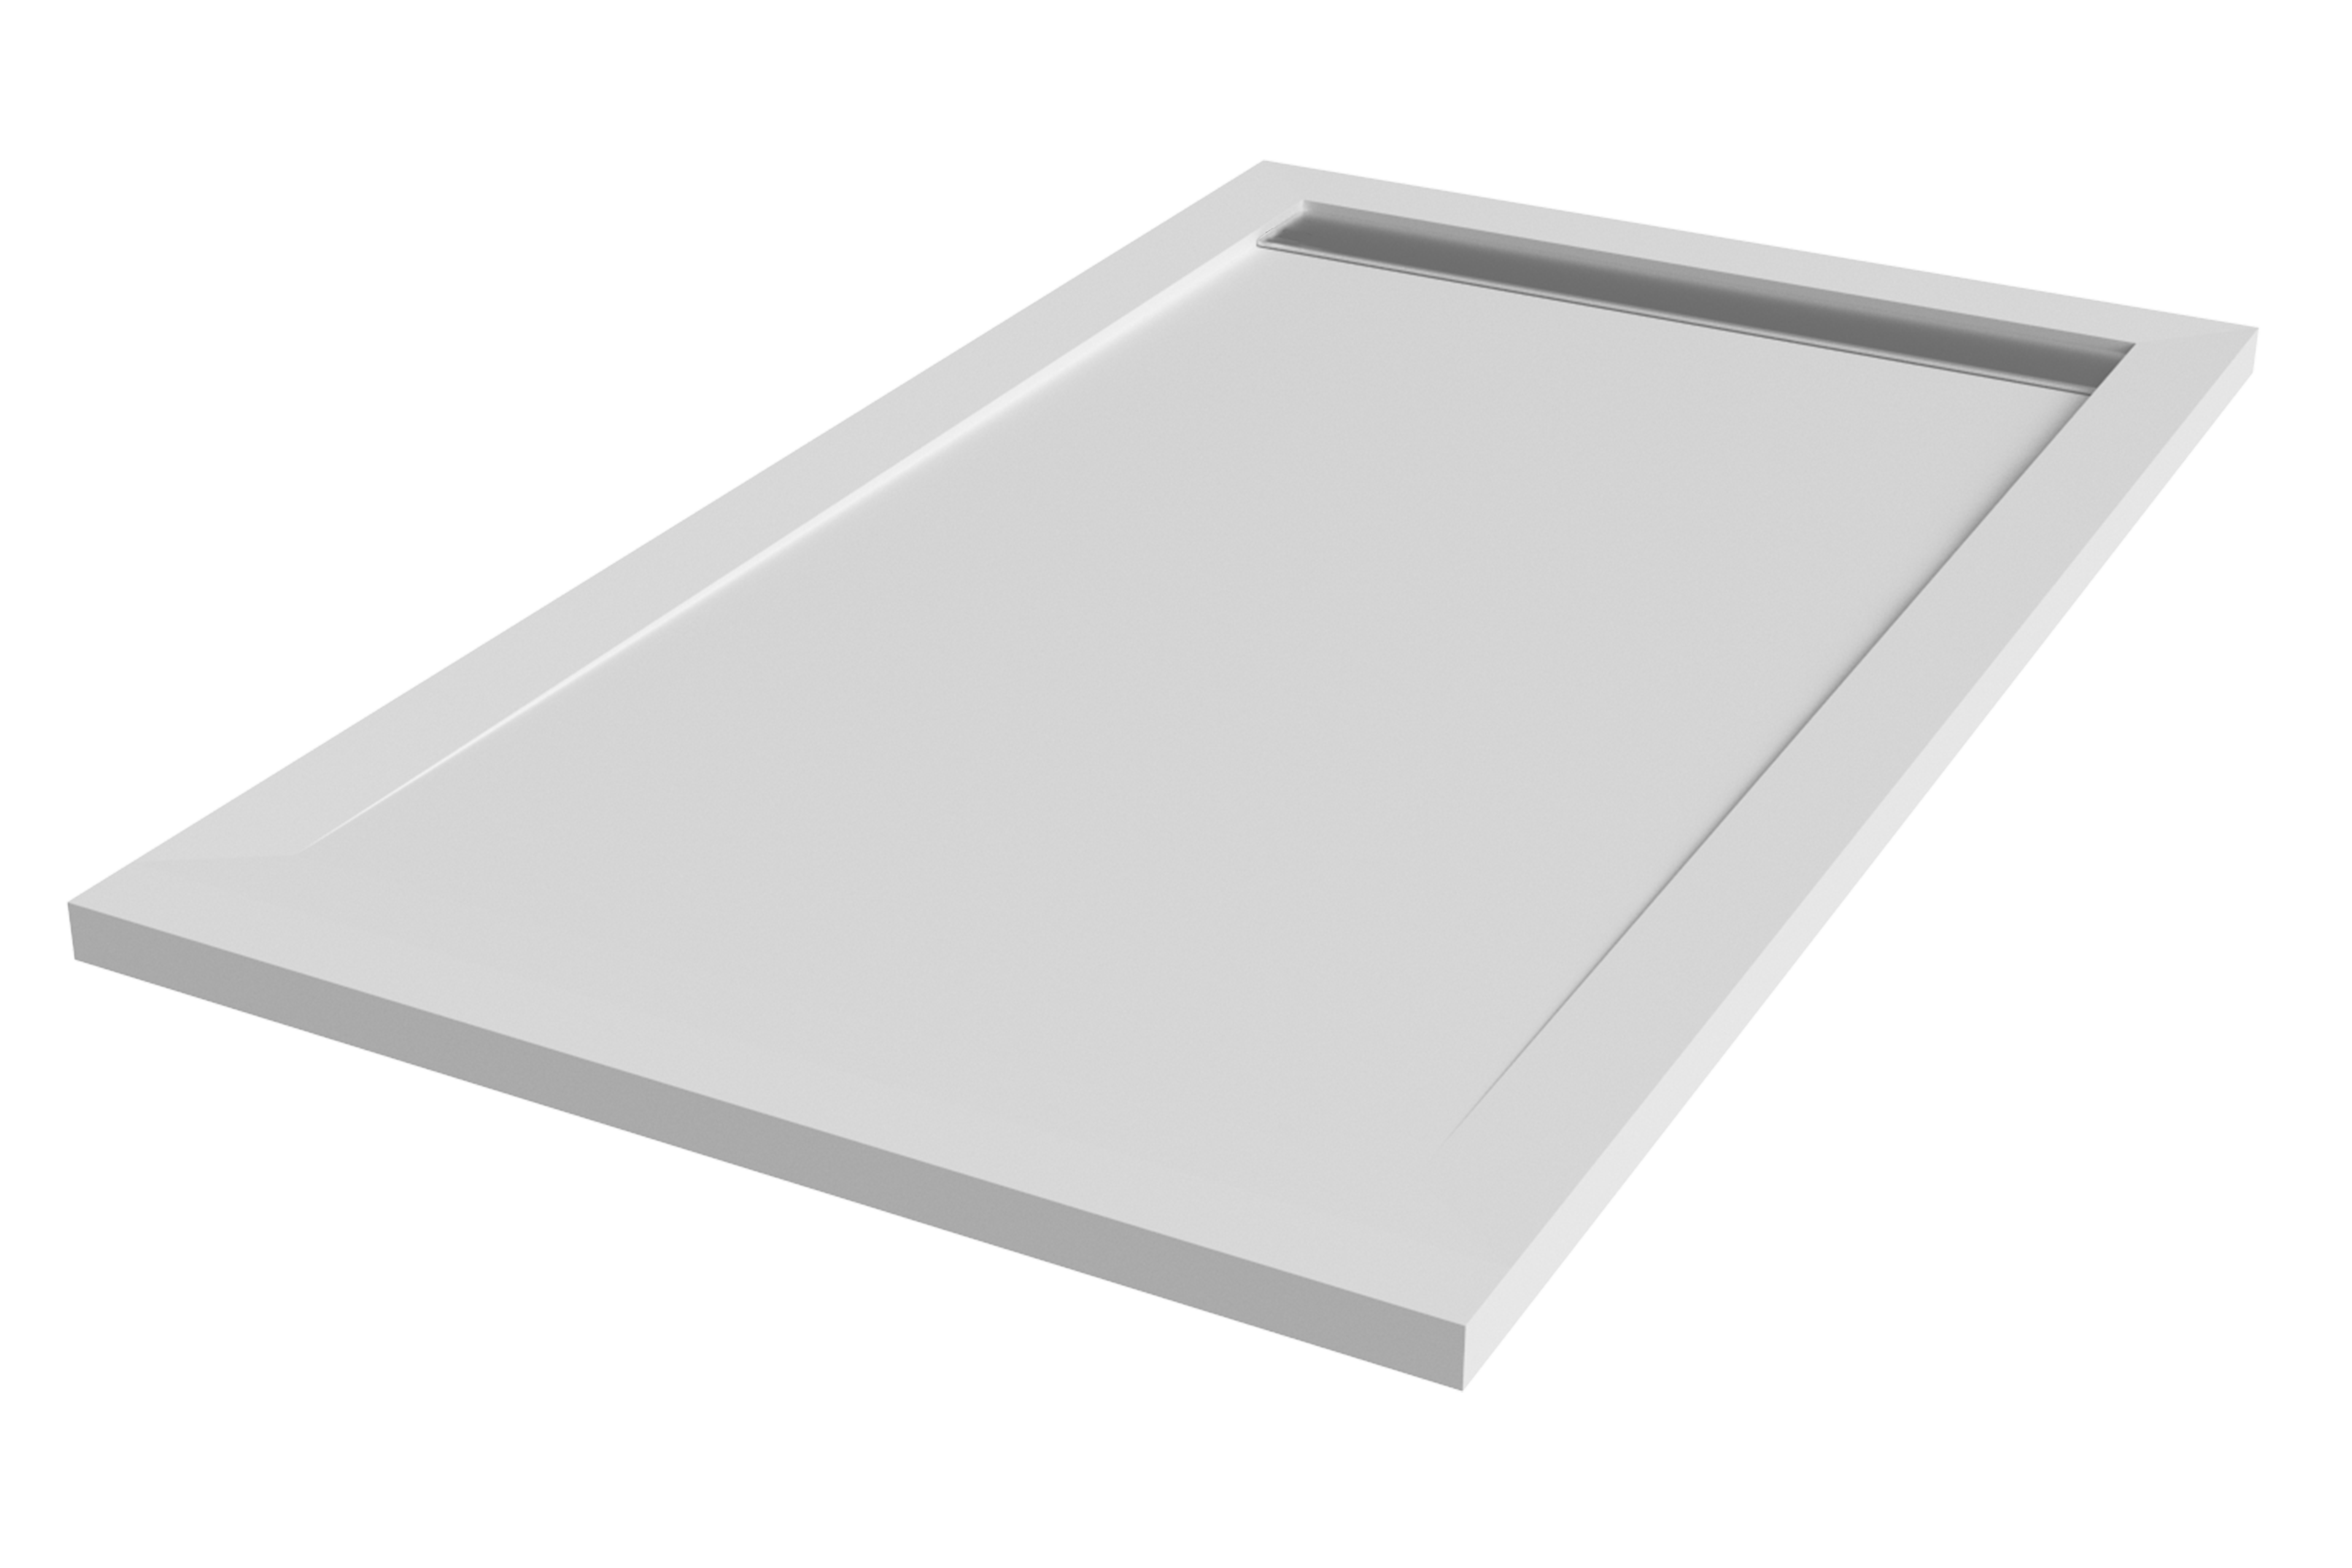 Plato de ducha kaliso 120x80 cm blanco